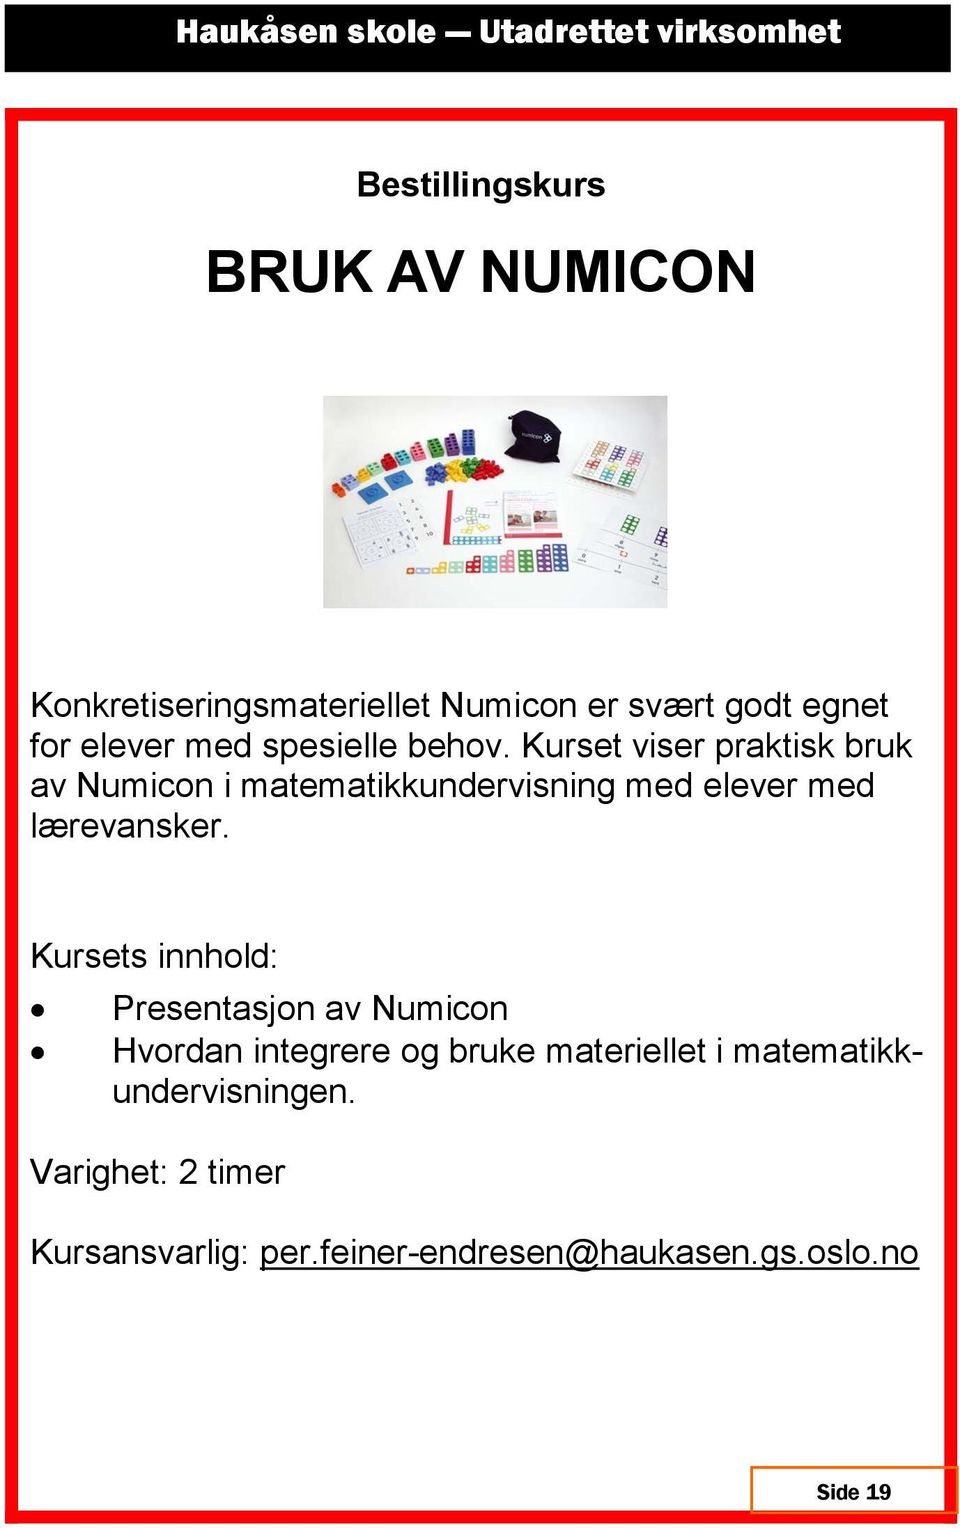 Kurset viser praktisk bruk av Numicon i matematikkundervisning med elever med lærevansker.